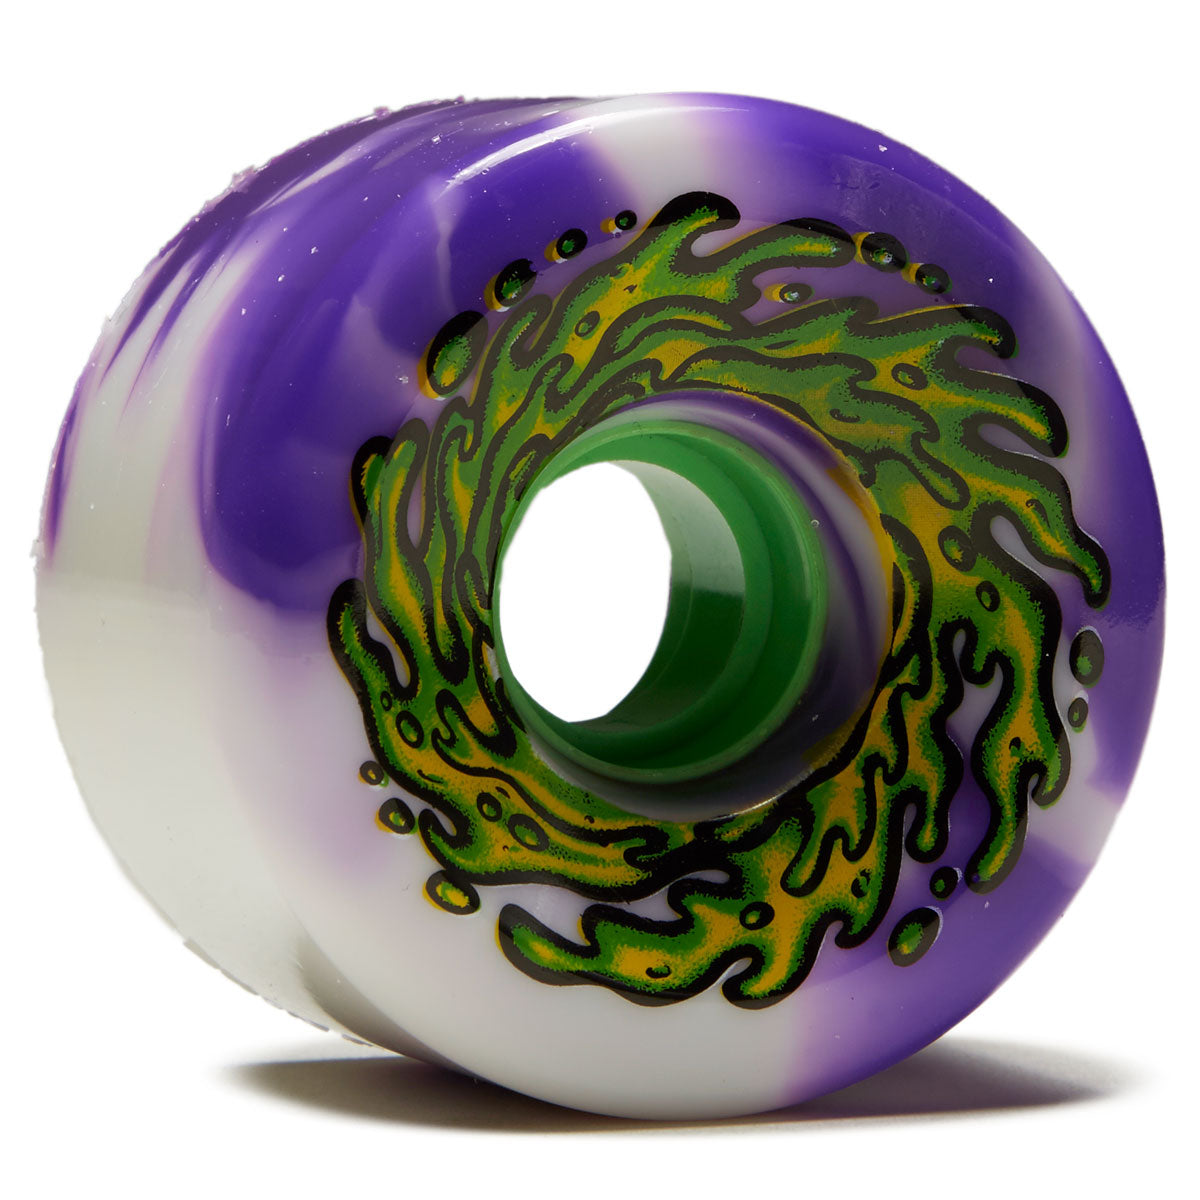 Slime Balls OG Slime 78a Skateboard Wheels - Purple/White Swirl - 66mm image 1